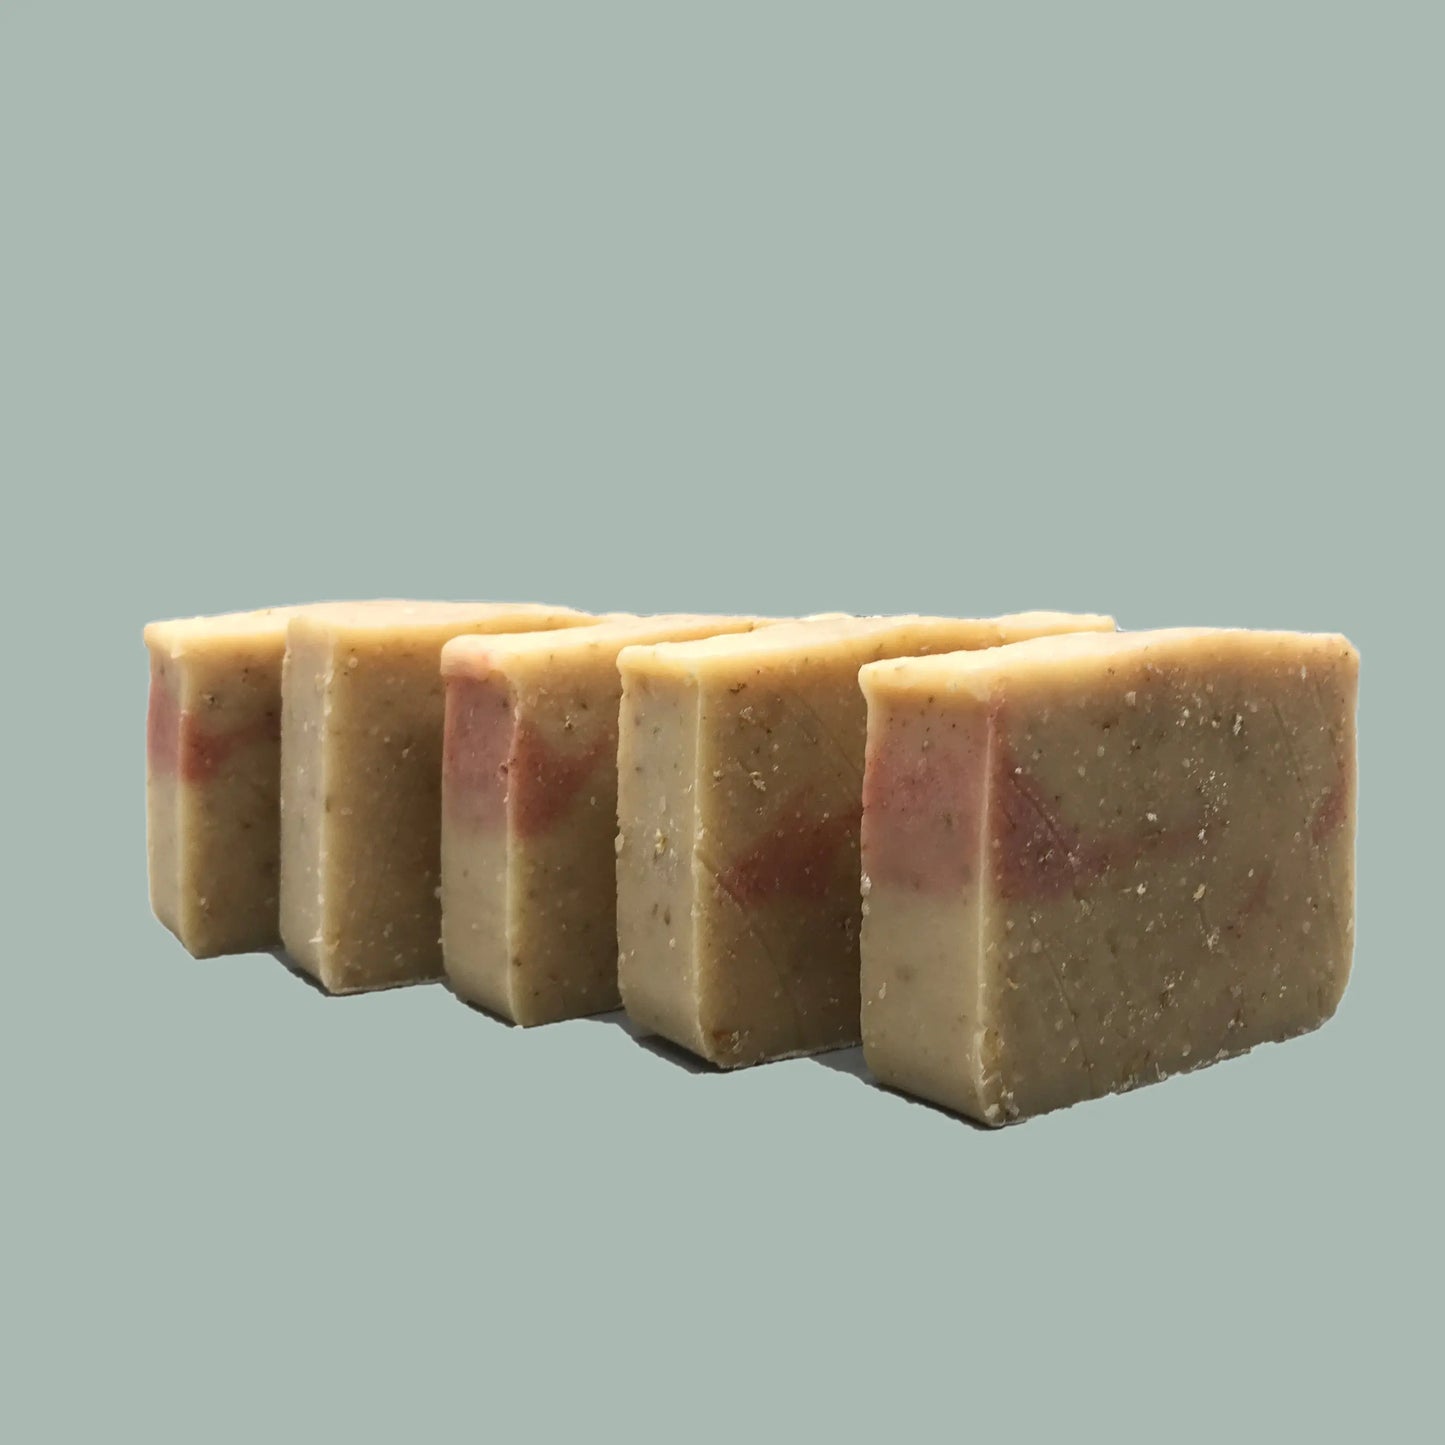 Bargain Bundles of Soap - Save 10% Harvest Hills Skin Care - All Natural Goat Milk Skin Care, LLC